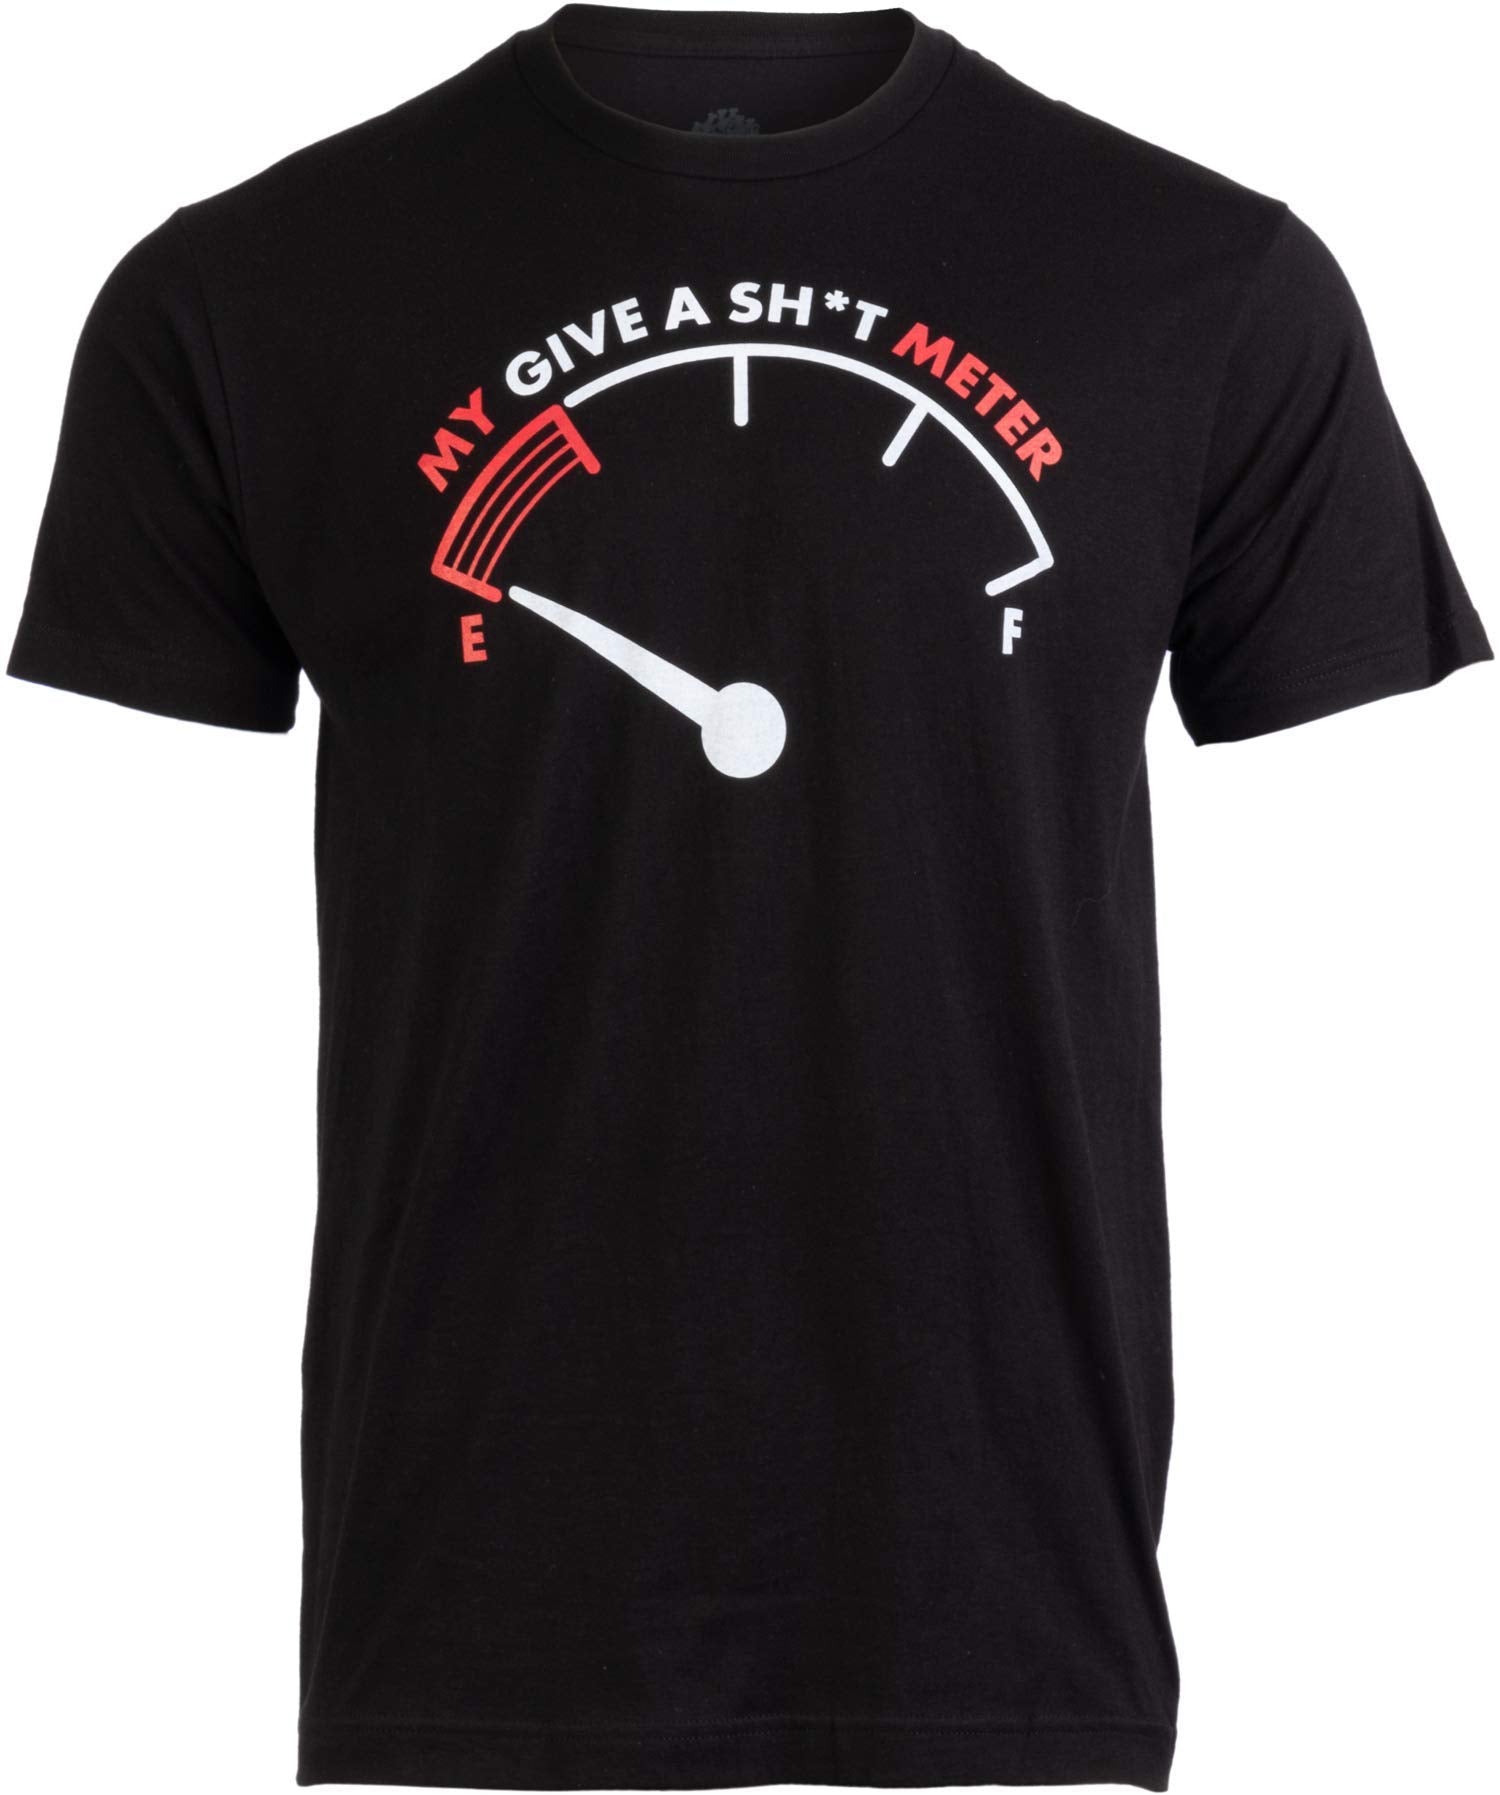 T-shirt avec slogan imprimé My Give A Sh*t Meter pour hommes 